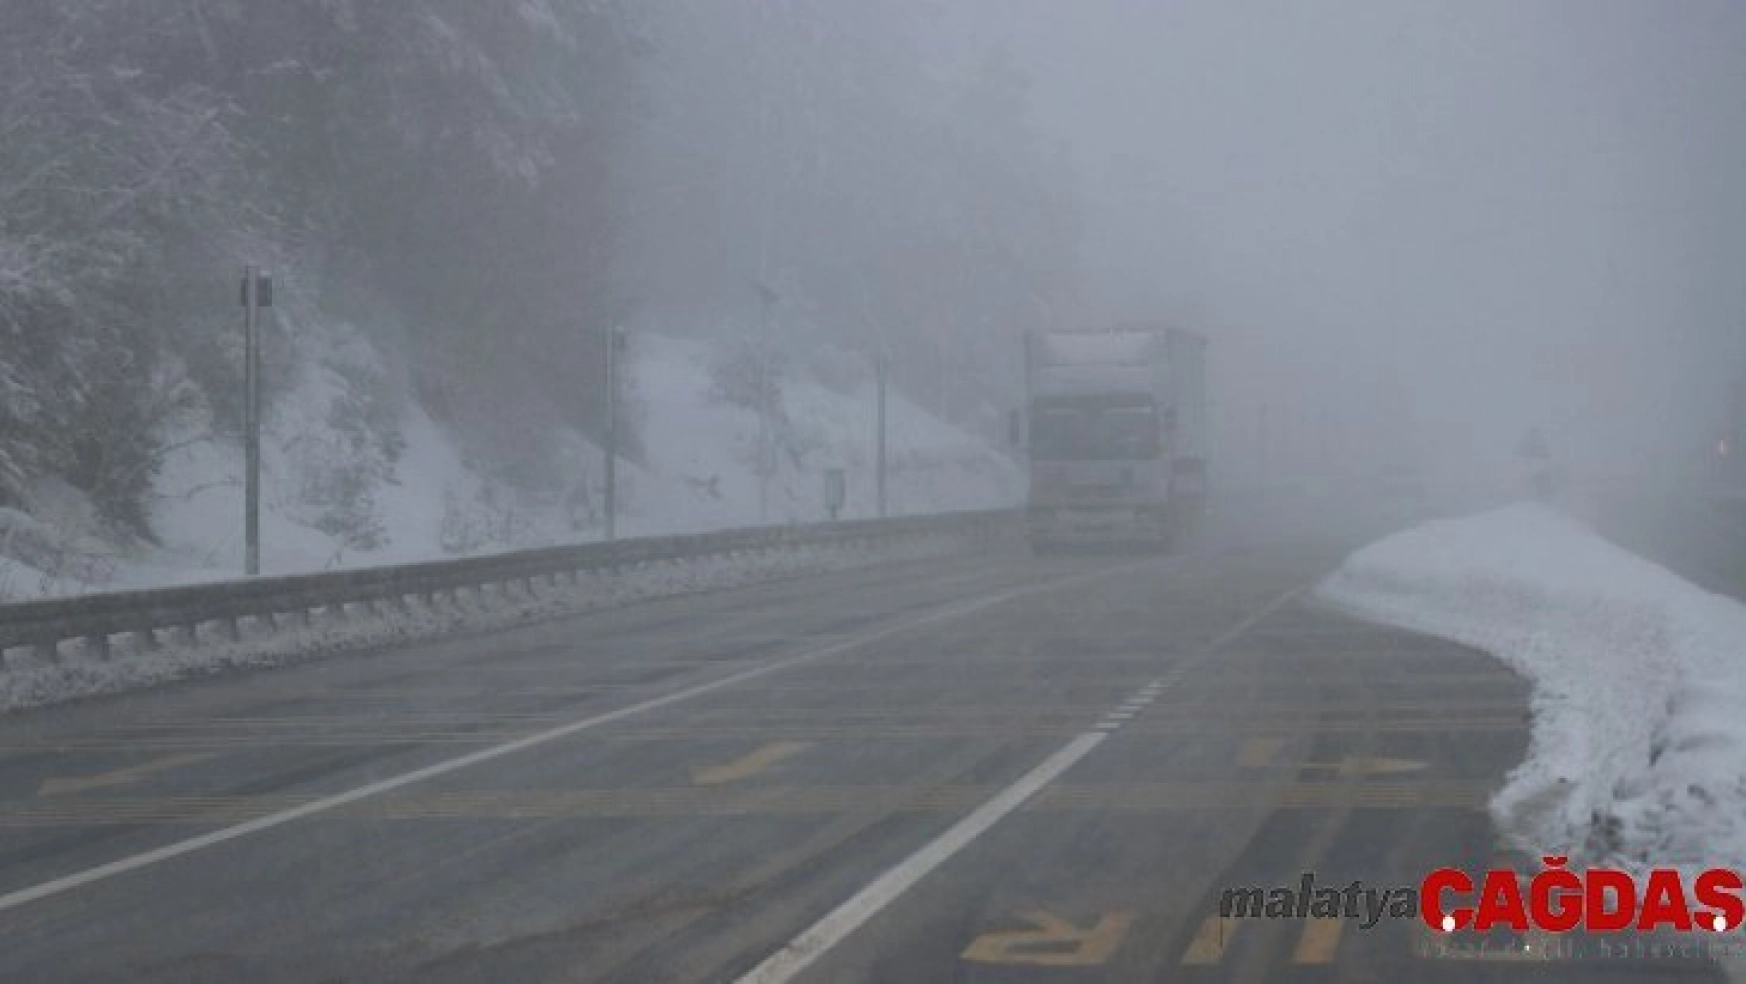 Bolu Dağı'nda kar yağışı ve sis etkili oluyor